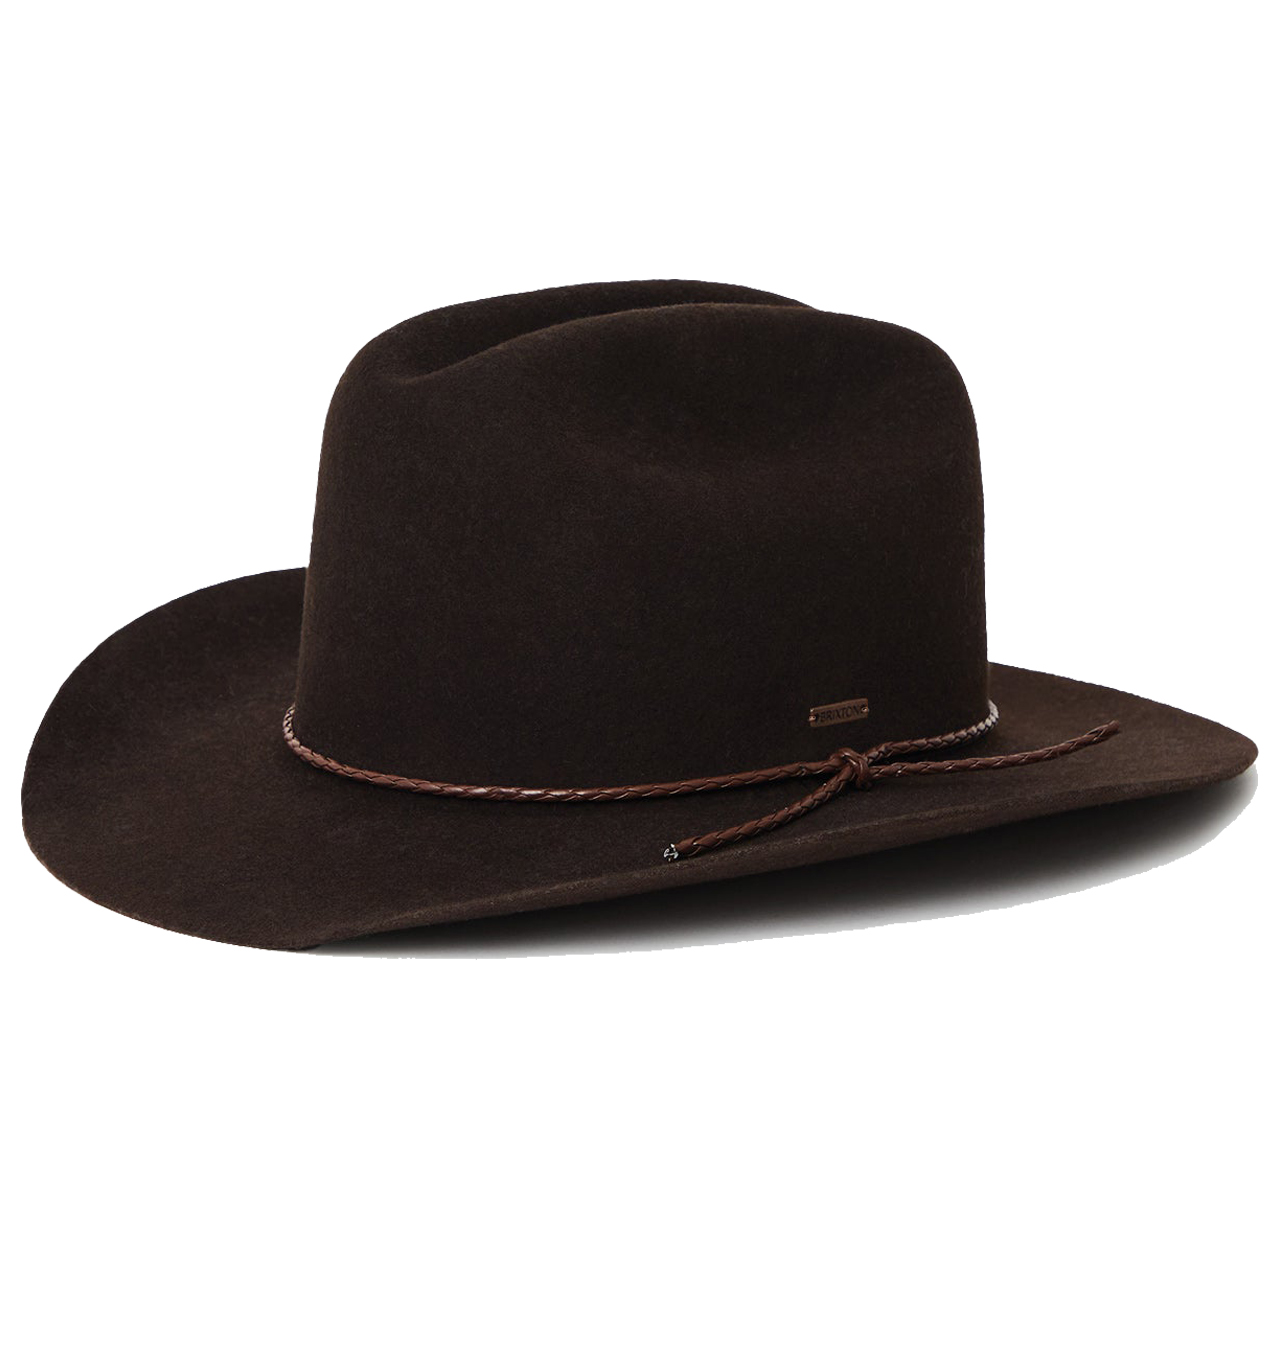 Brixton - Vasquez Reserve Cowboy Hat - Chocolate